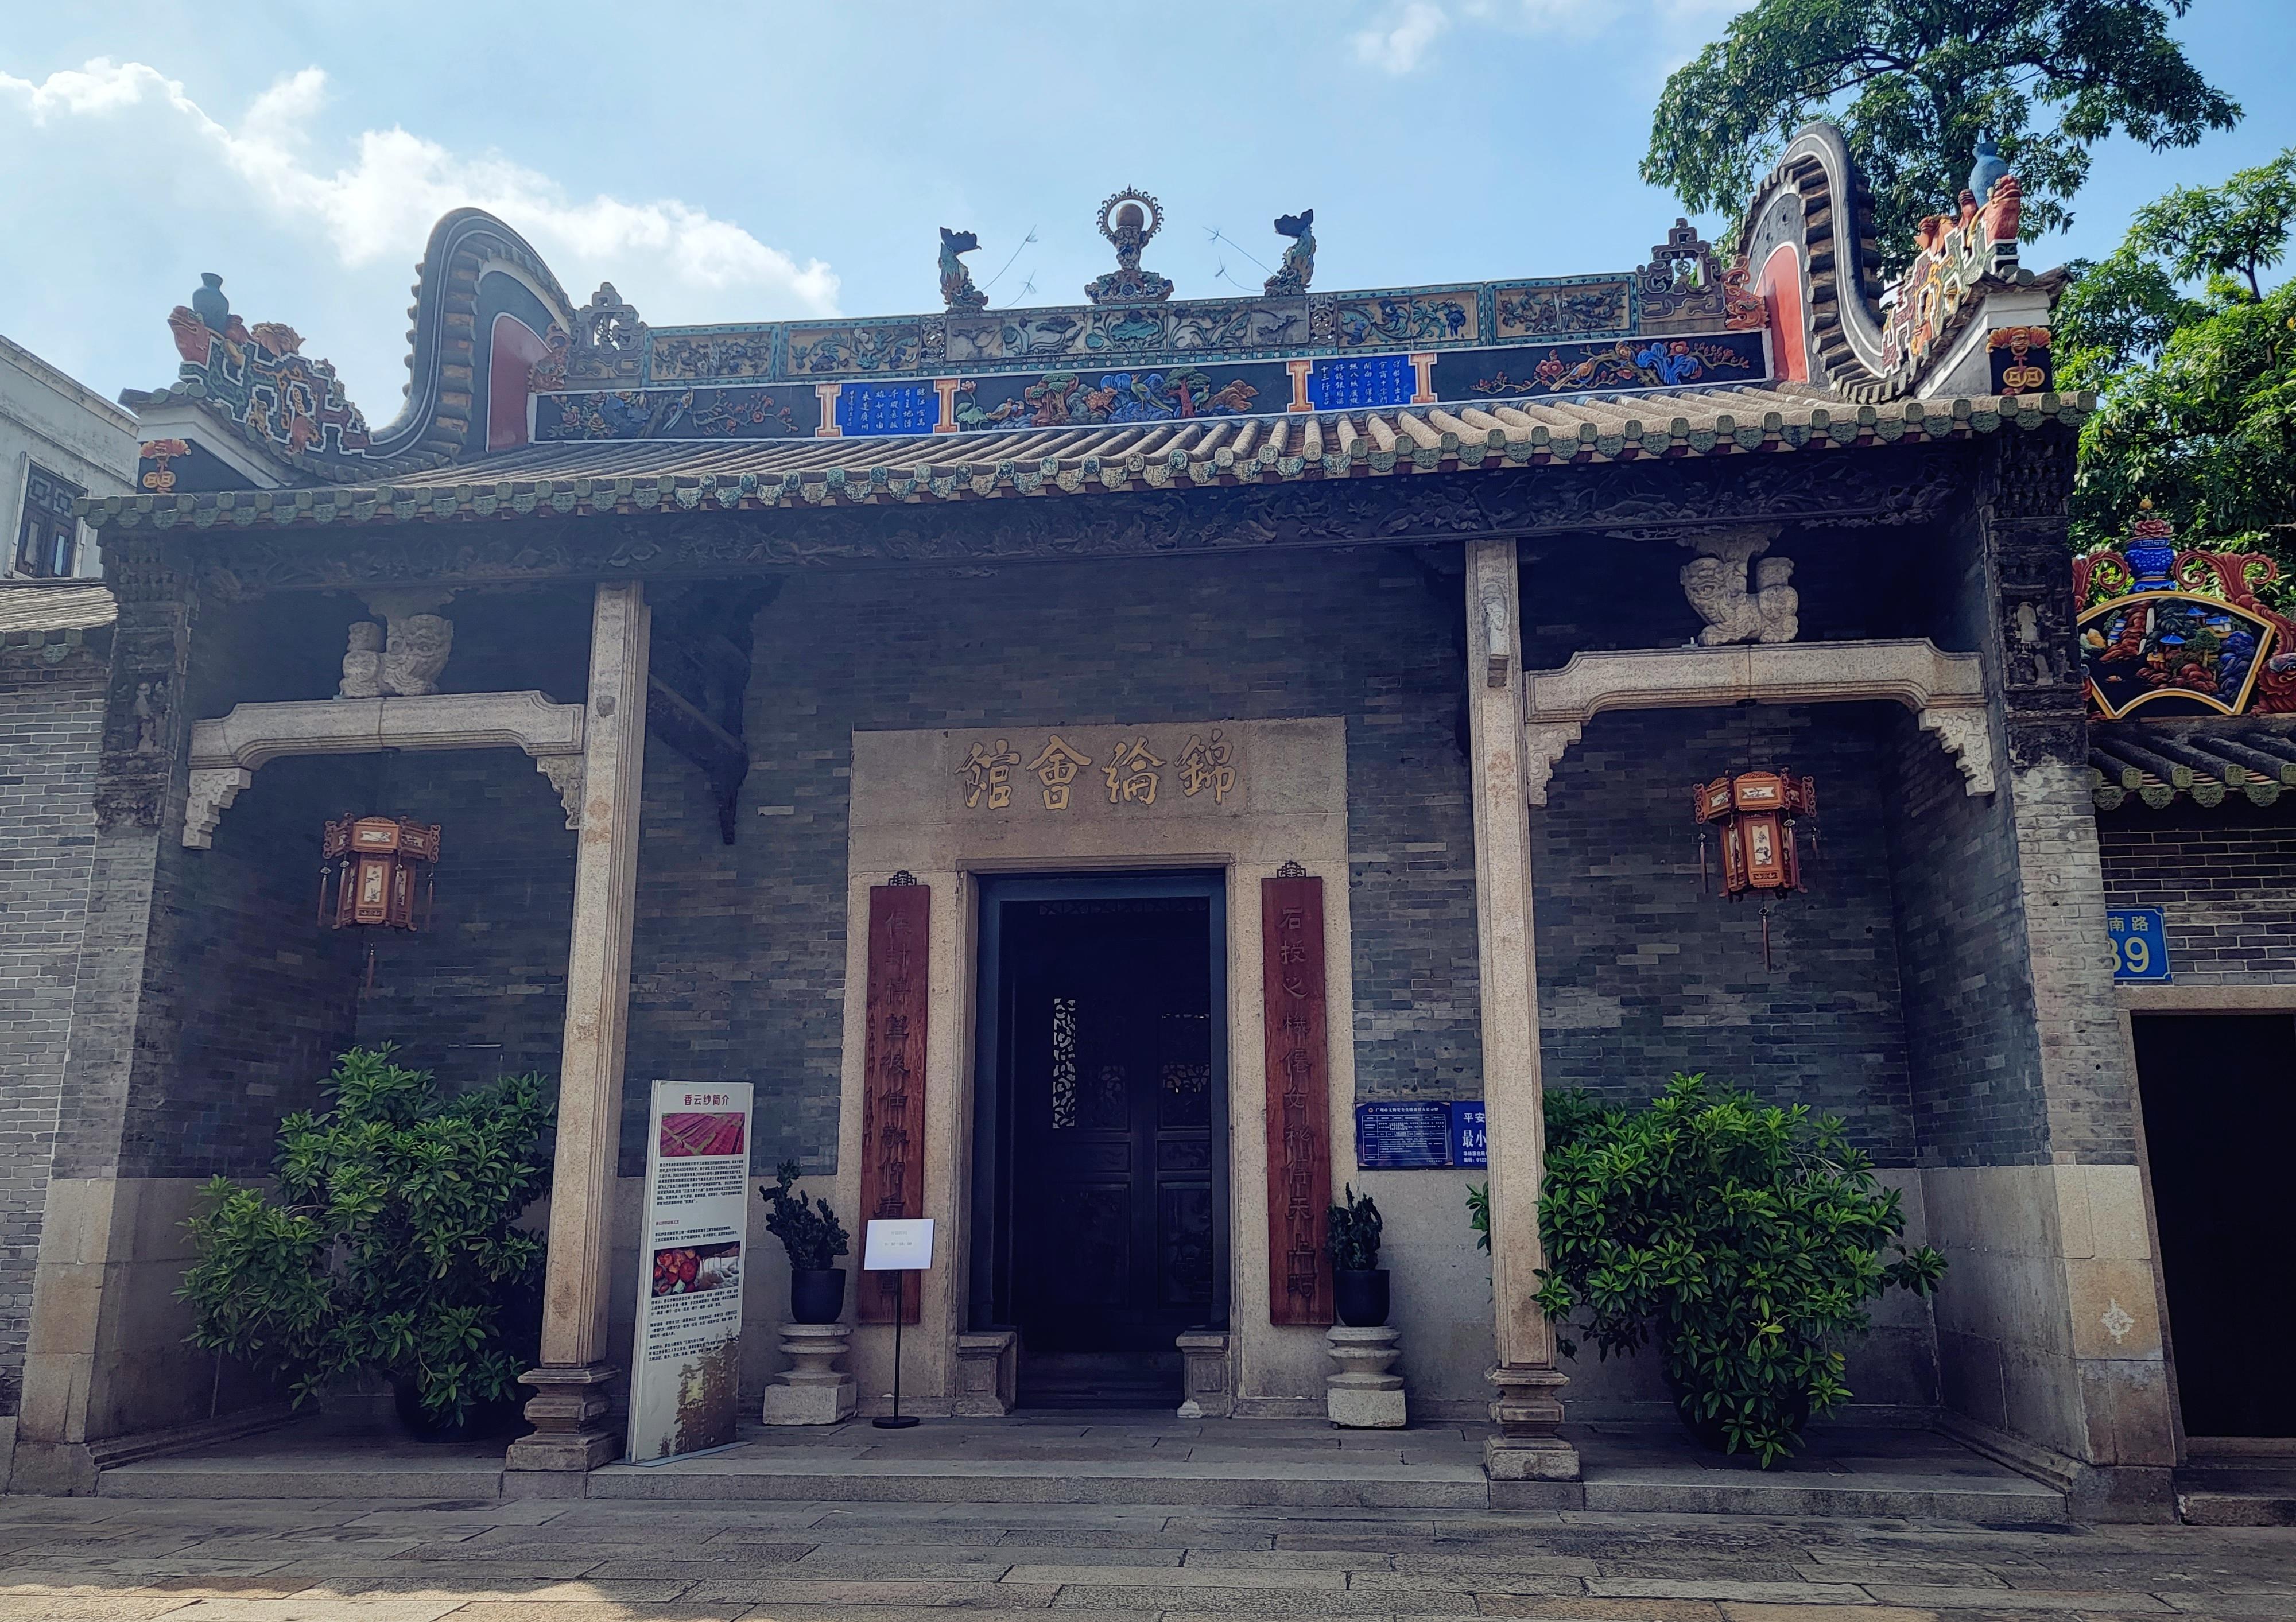 錦綸會館作為廣州目前唯一保存的行業會館，已成為廣州海上絲綢之路的重要物証之一。寧玉瑛攝